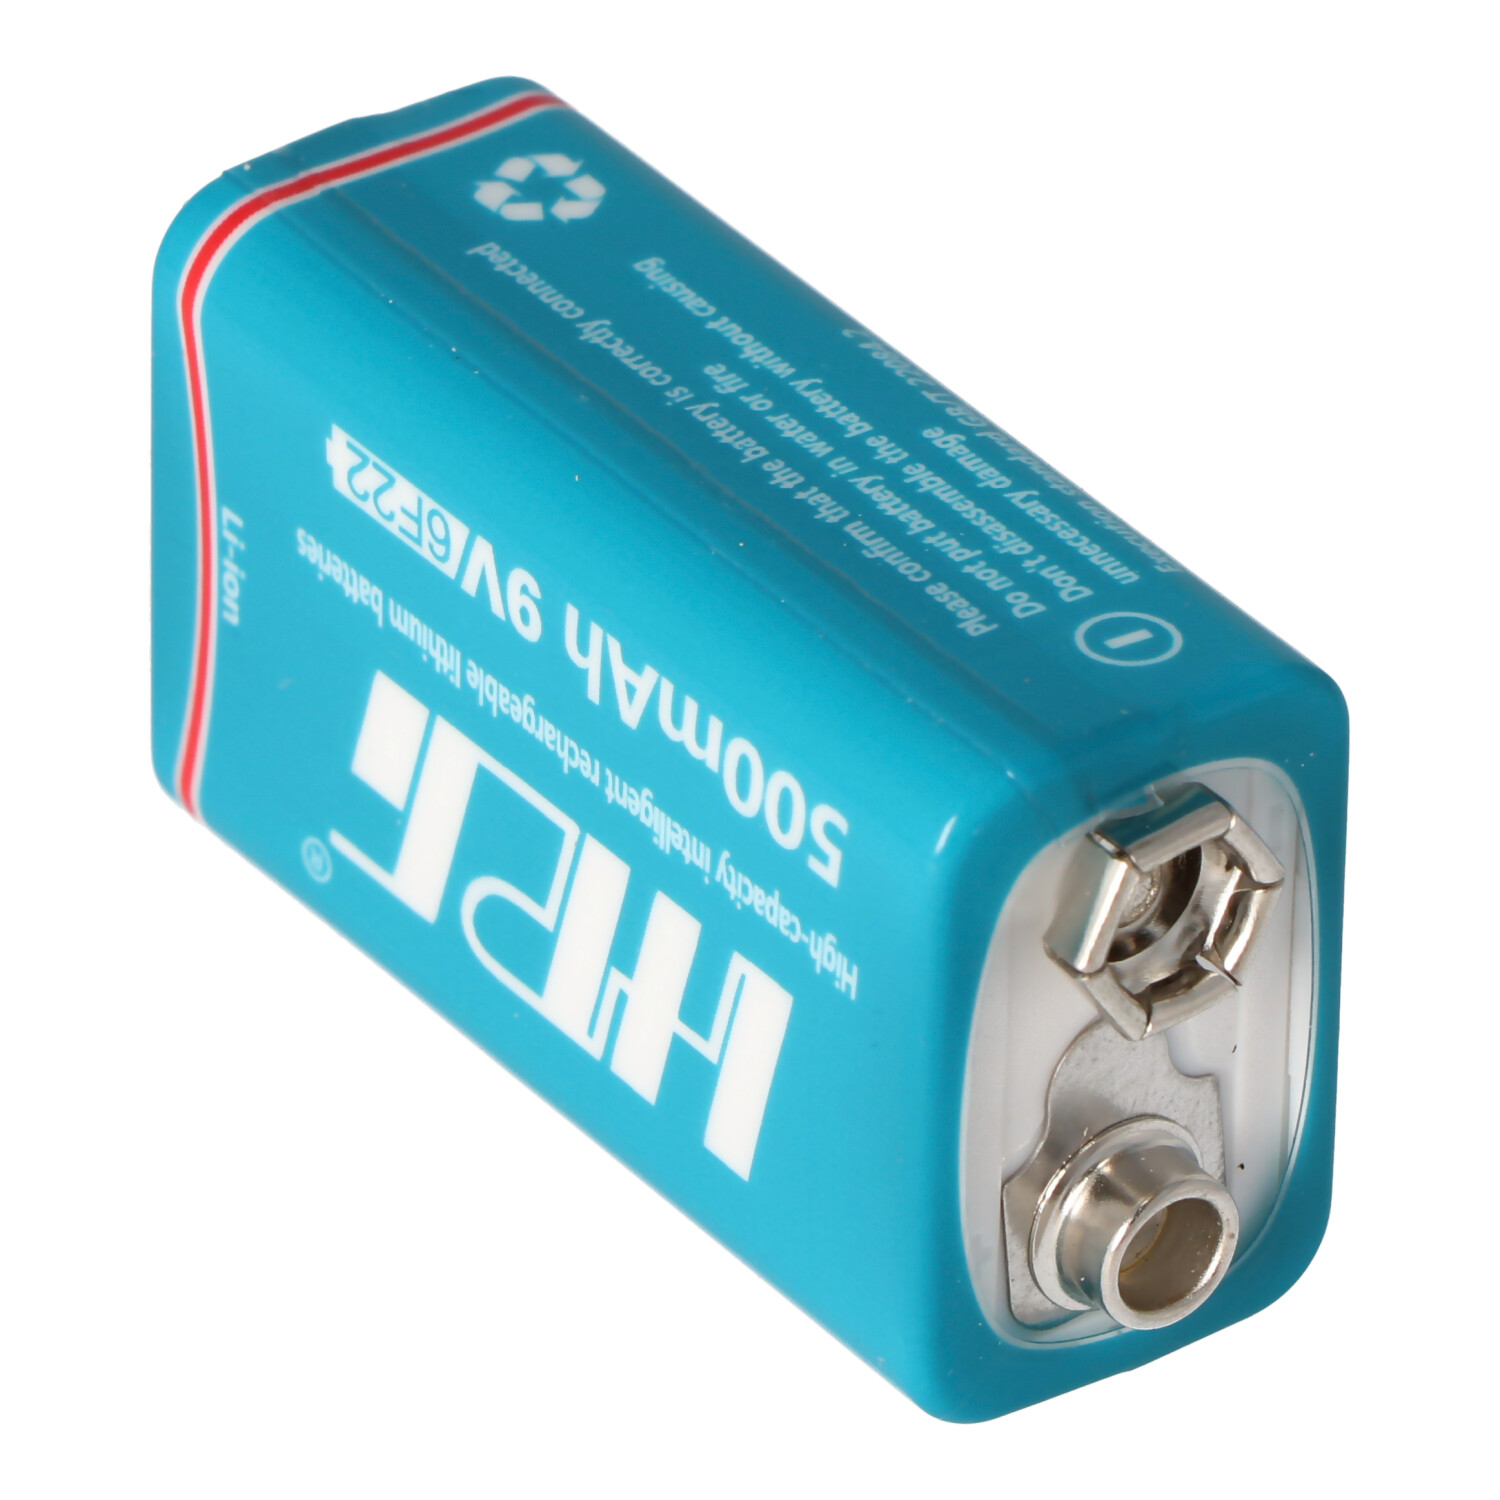 9V Li-ion Akku mit USB-Ladebuchse zum nachladen, mit 7,4 Volt 500mAh, 3,7Wh, mit USB-Ladefunktion